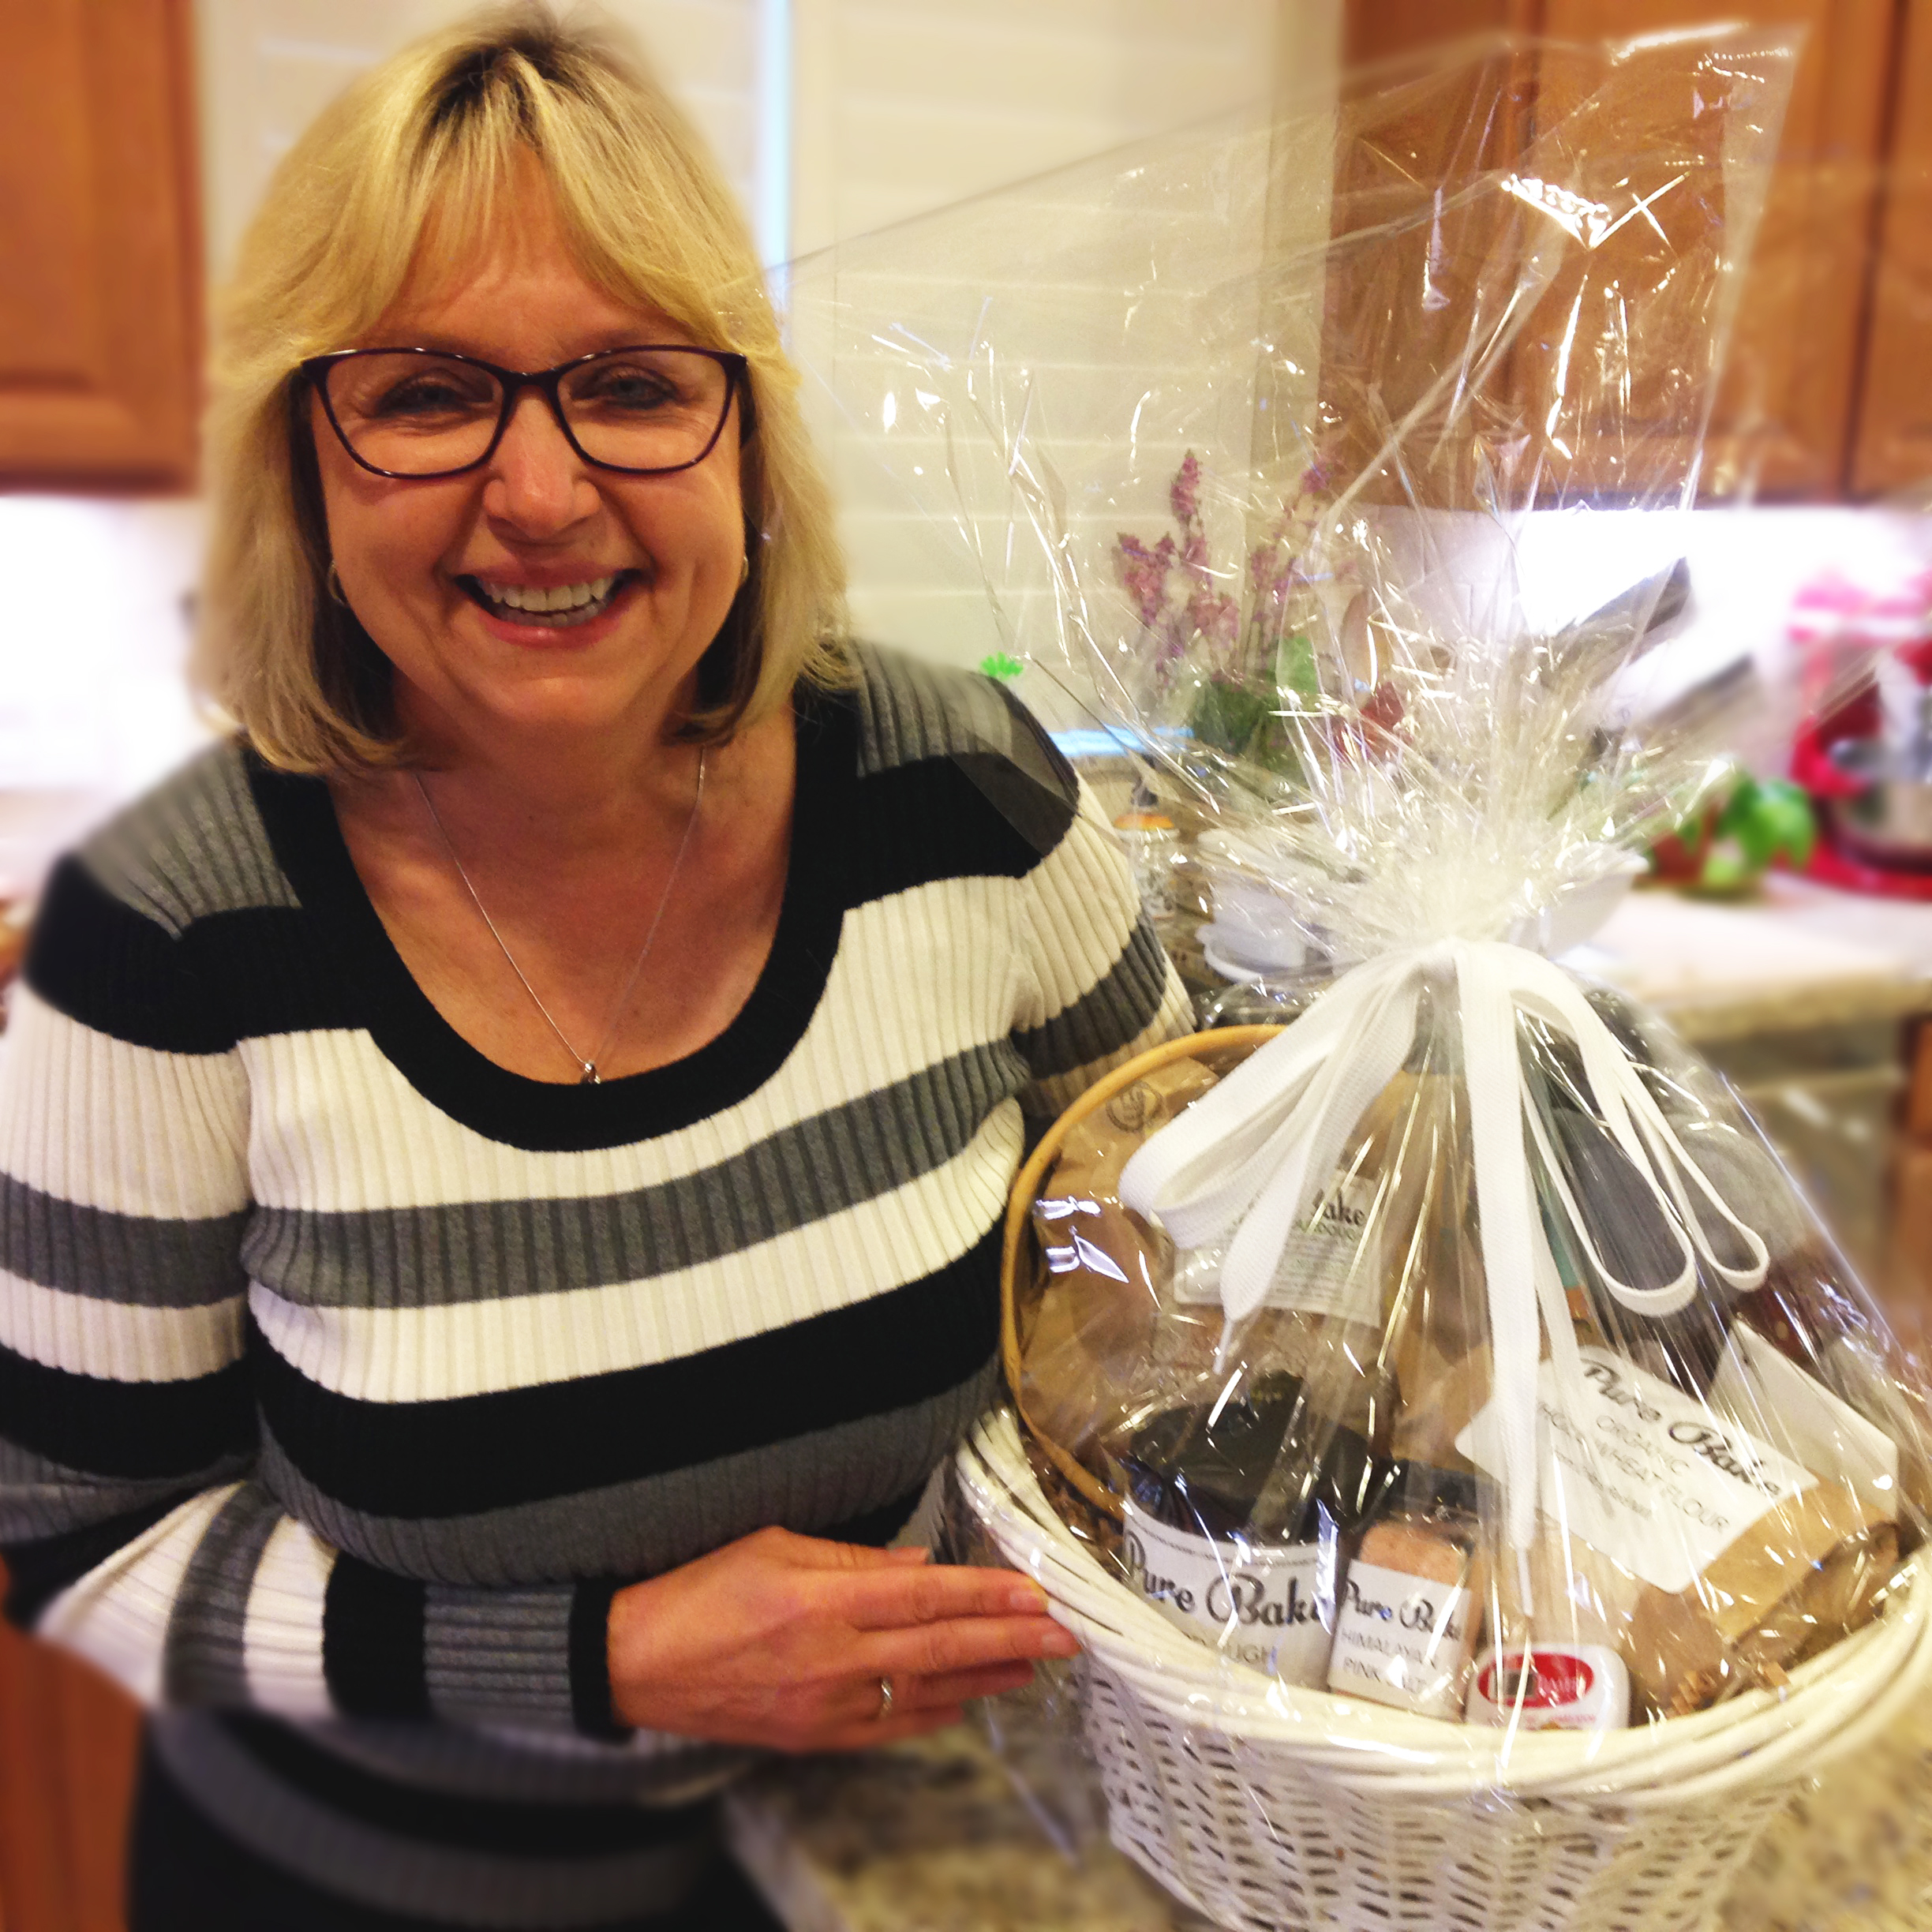 We Bake Loaf 10,000. Laura gets the Gift Basket